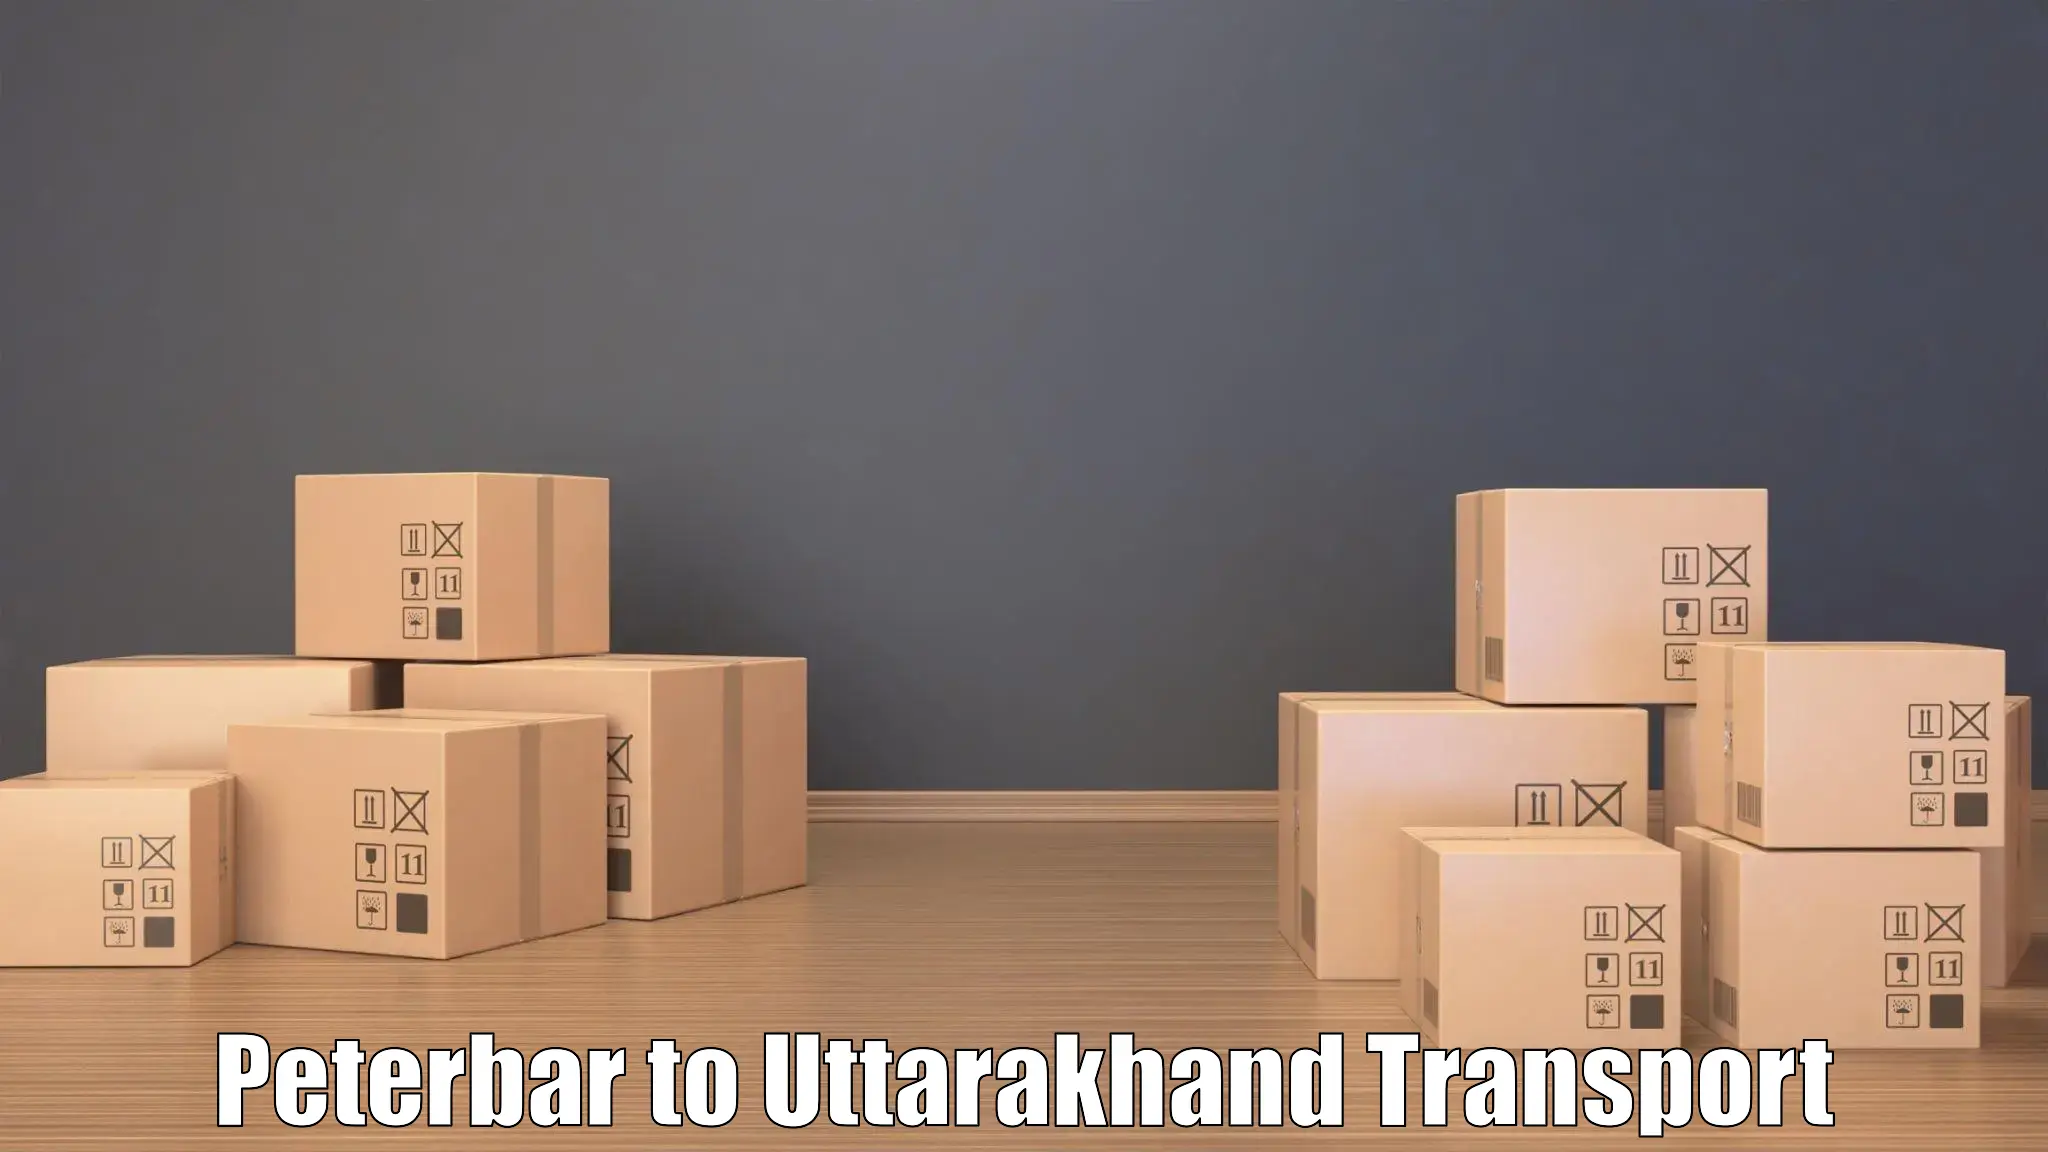 Online transport booking Peterbar to Udham Singh Nagar